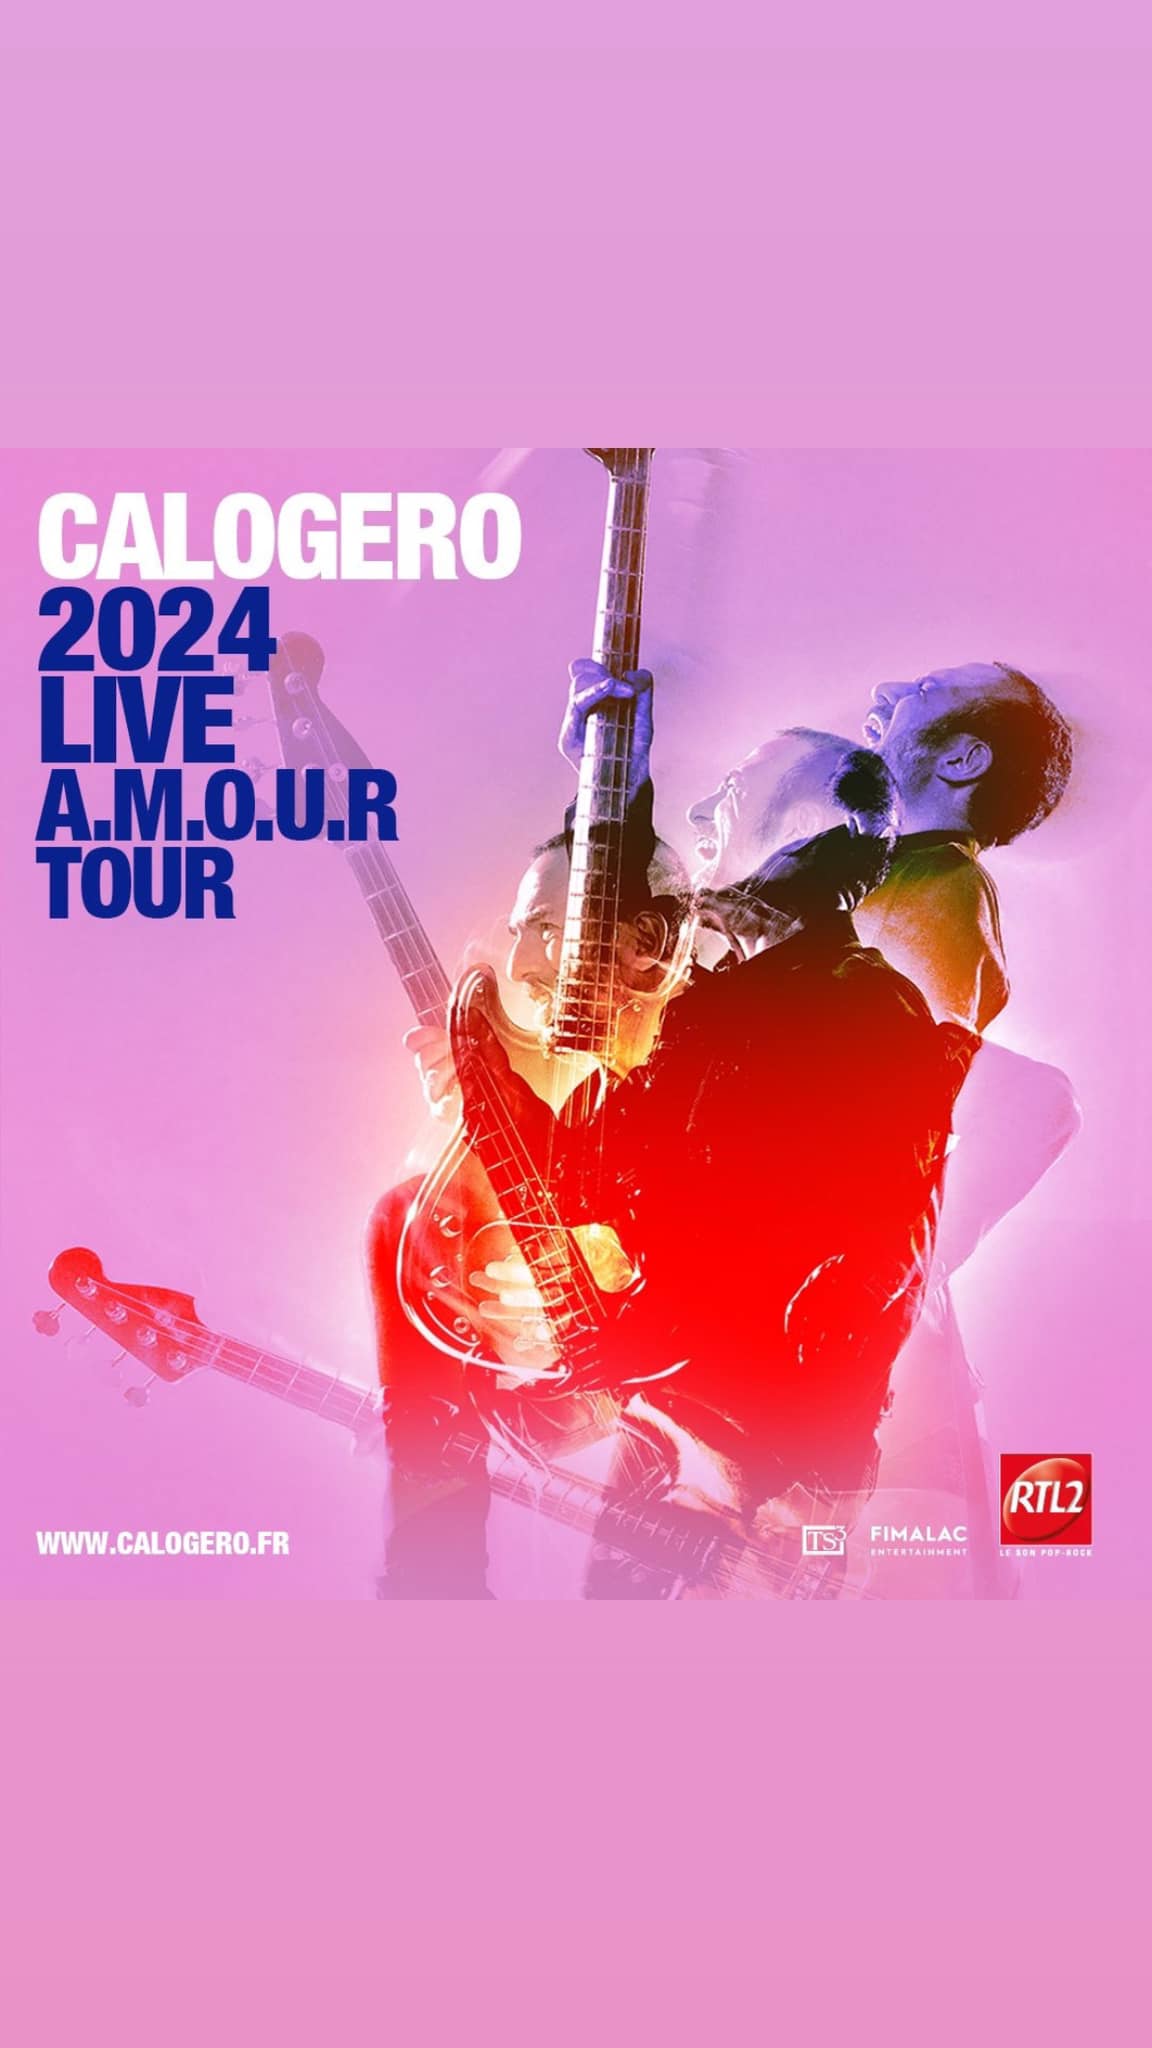 Affiche de la tournée de Calogero 2024 A.M.O.U.R Tour